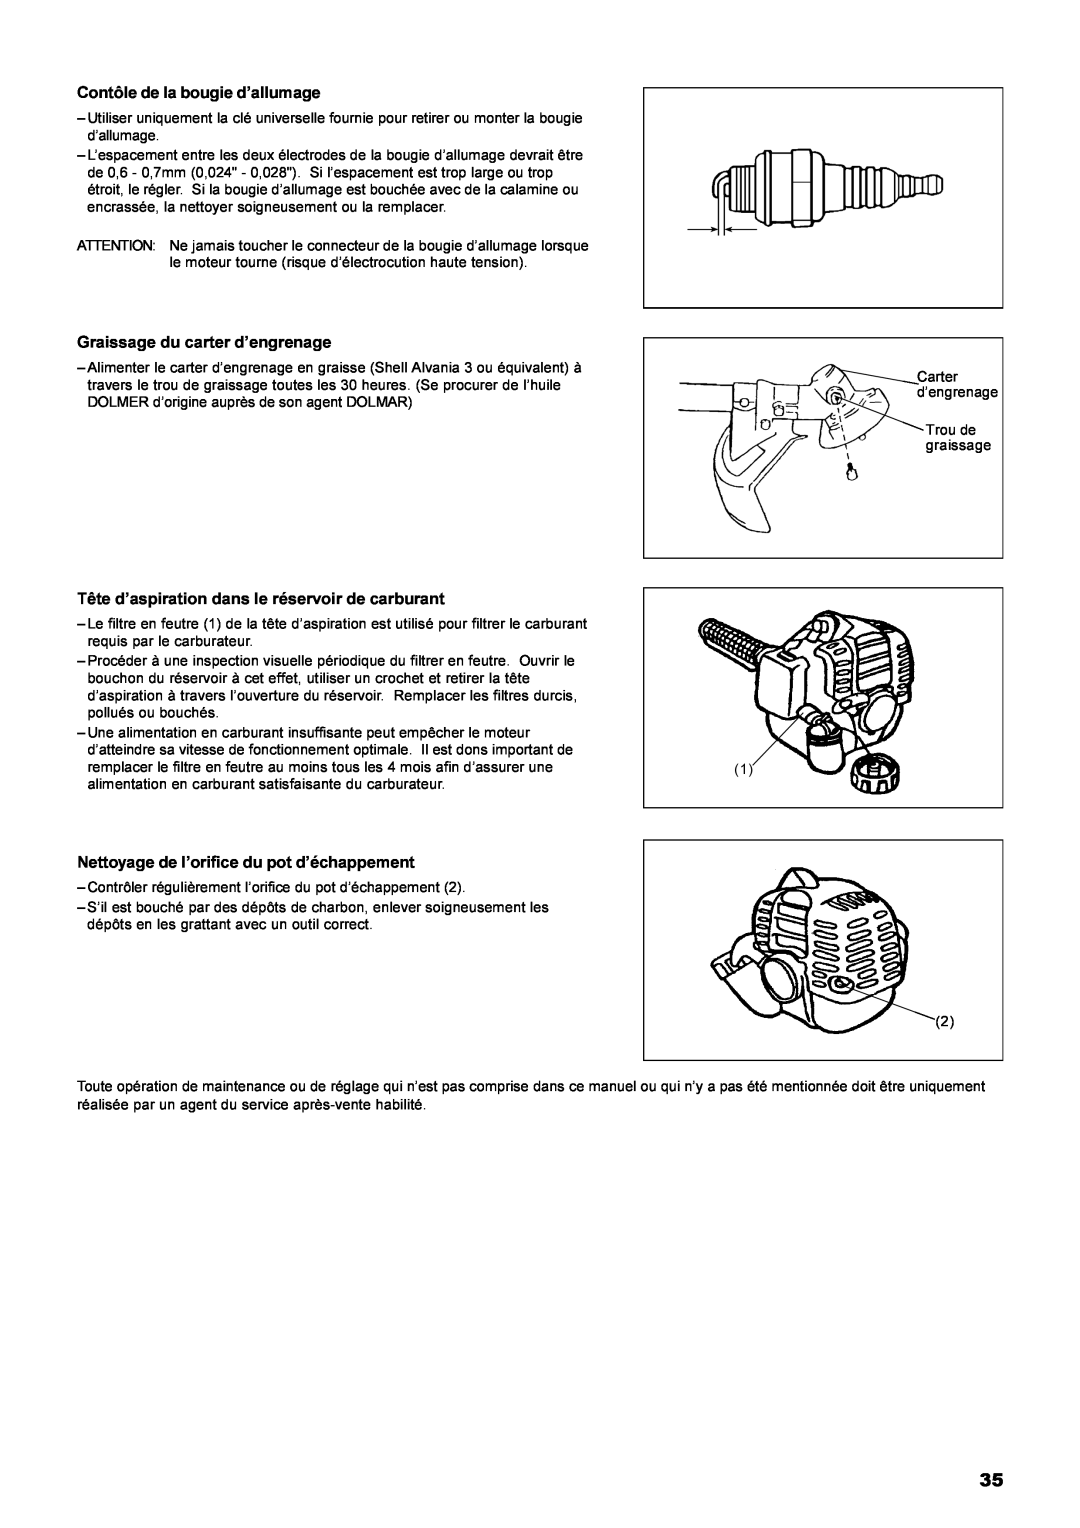 Dolmar MS-22C instruction manual Contôle de la bougie d’allumage, Graissage du carter d’engrenage 